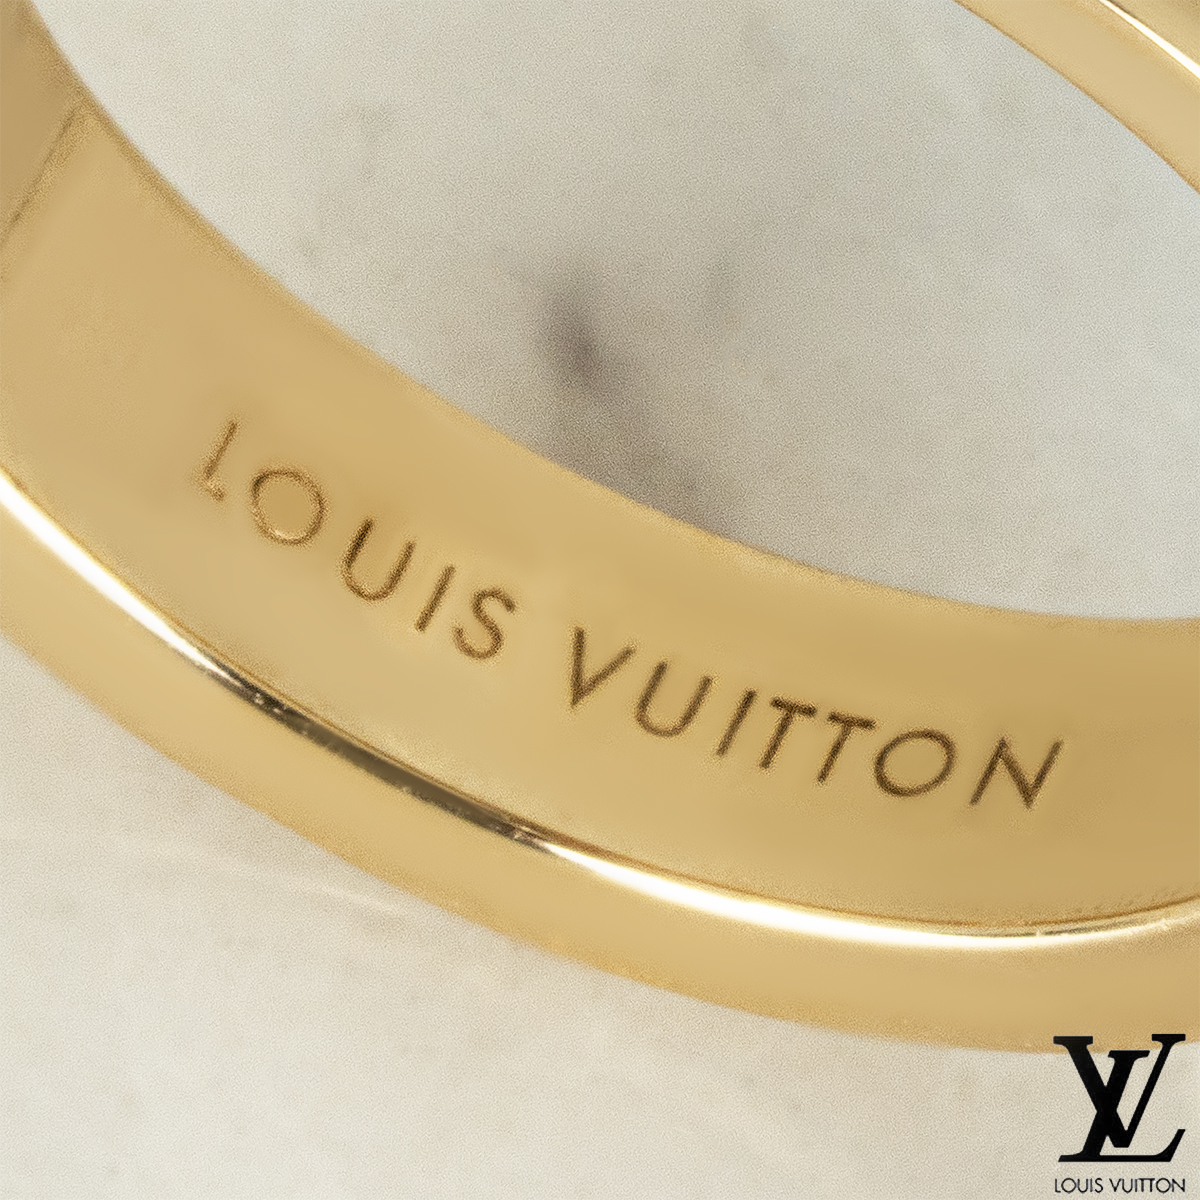 Louis Vuitton Yellow Gold Diamond Empreinte Ring Size 56